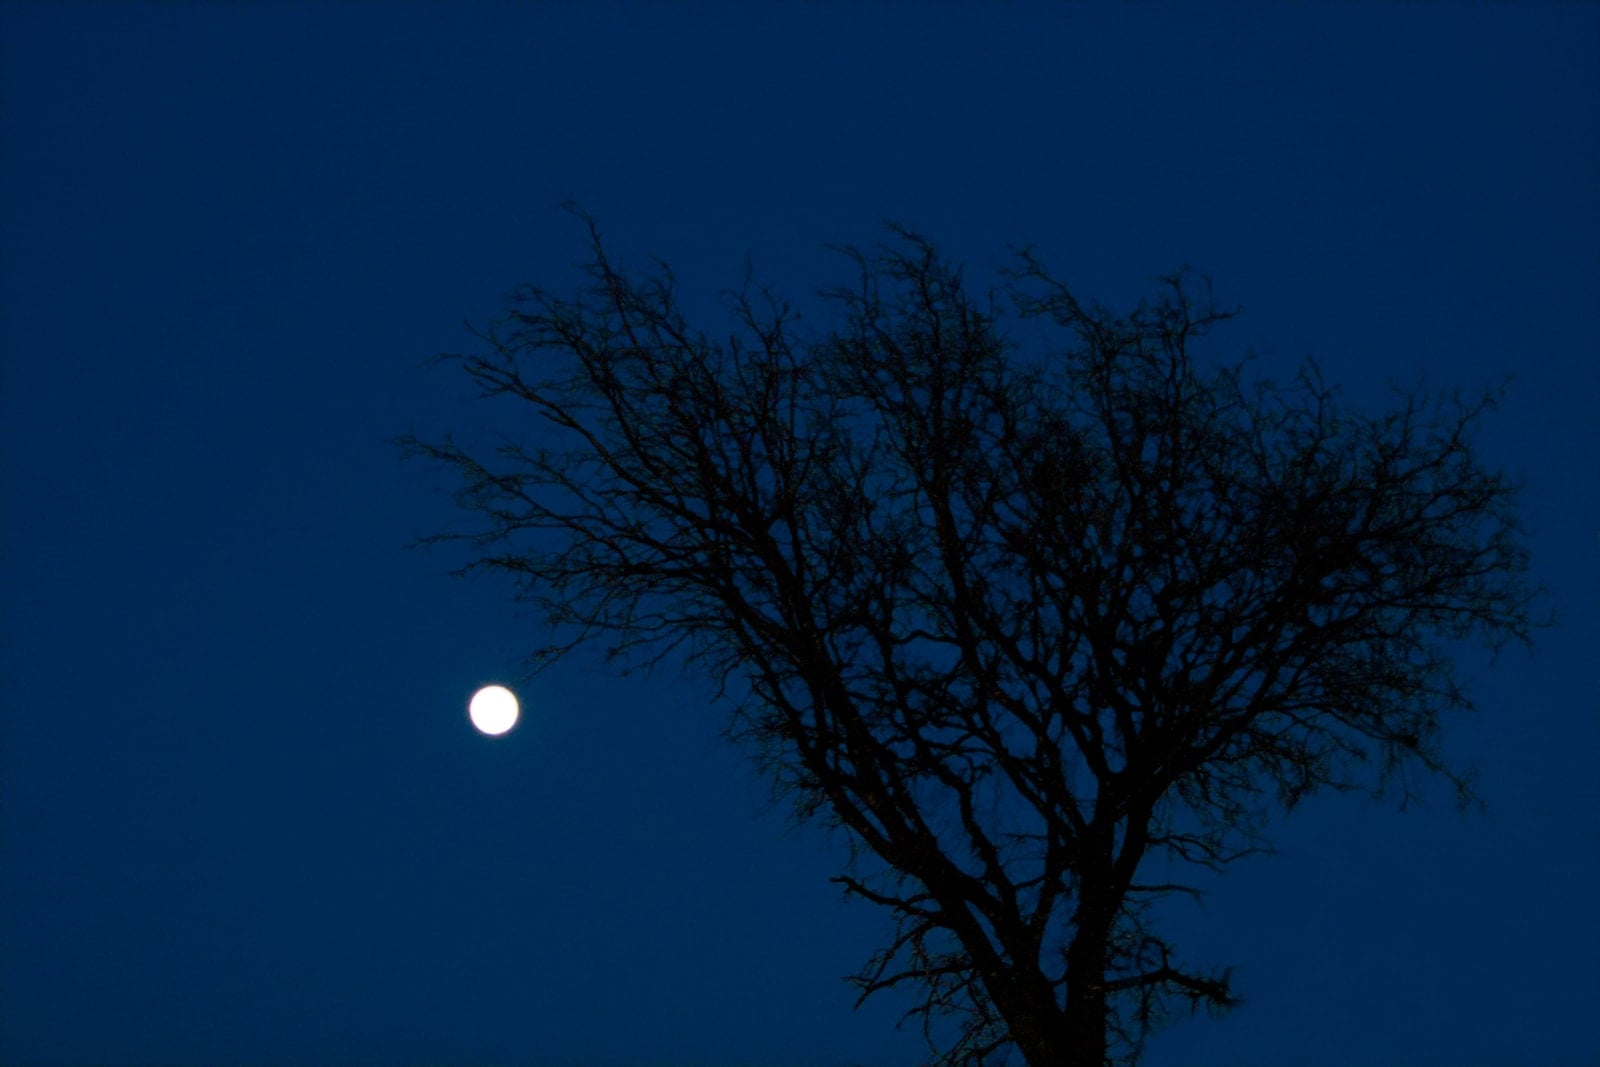 A tree and moon at night